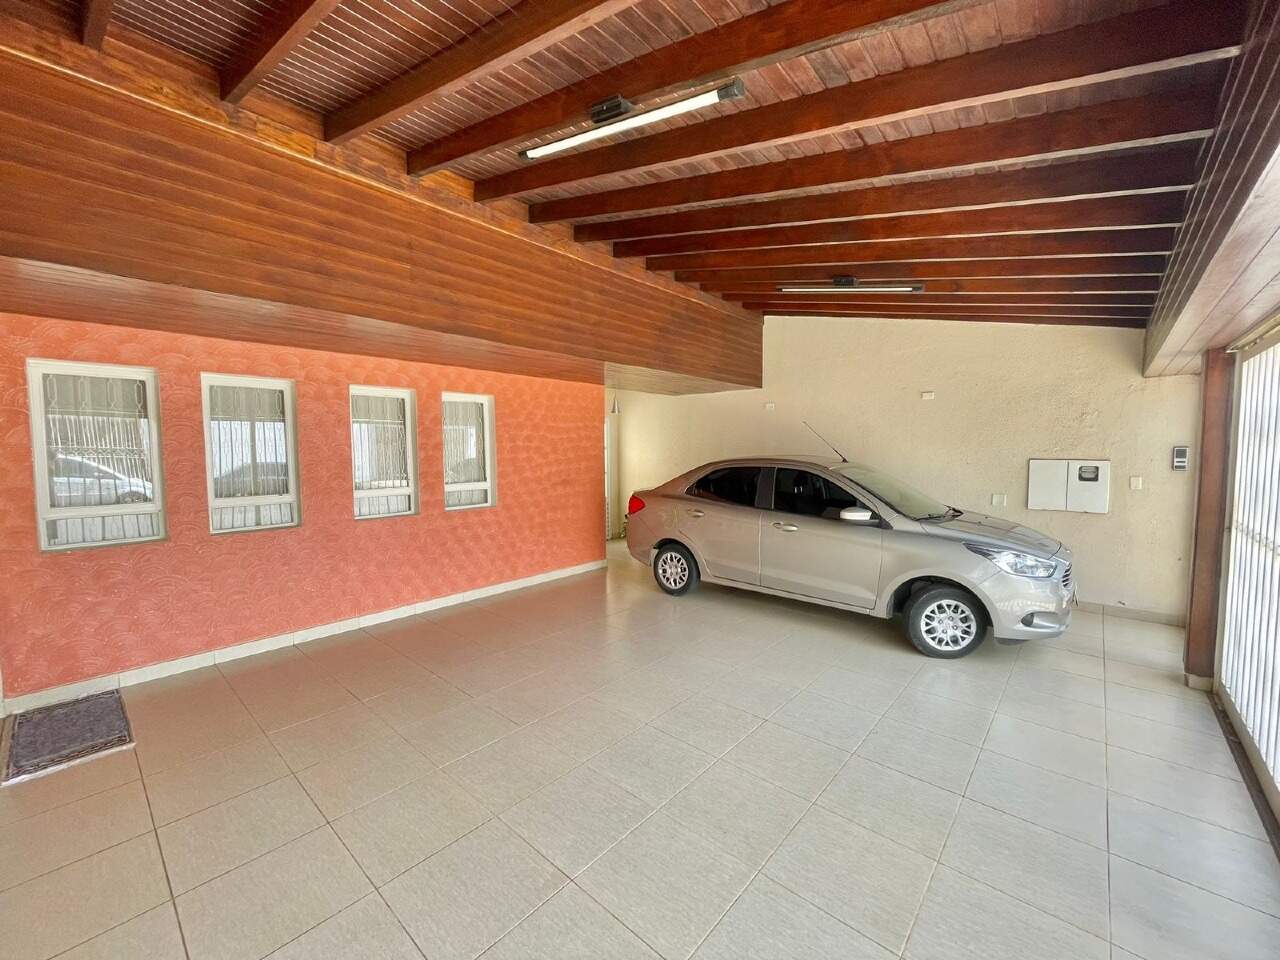 Casa à venda, 4 quartos, sendo 2 suítes, 3 vagas, no bairro Jardim Elite em Piracicaba - SP